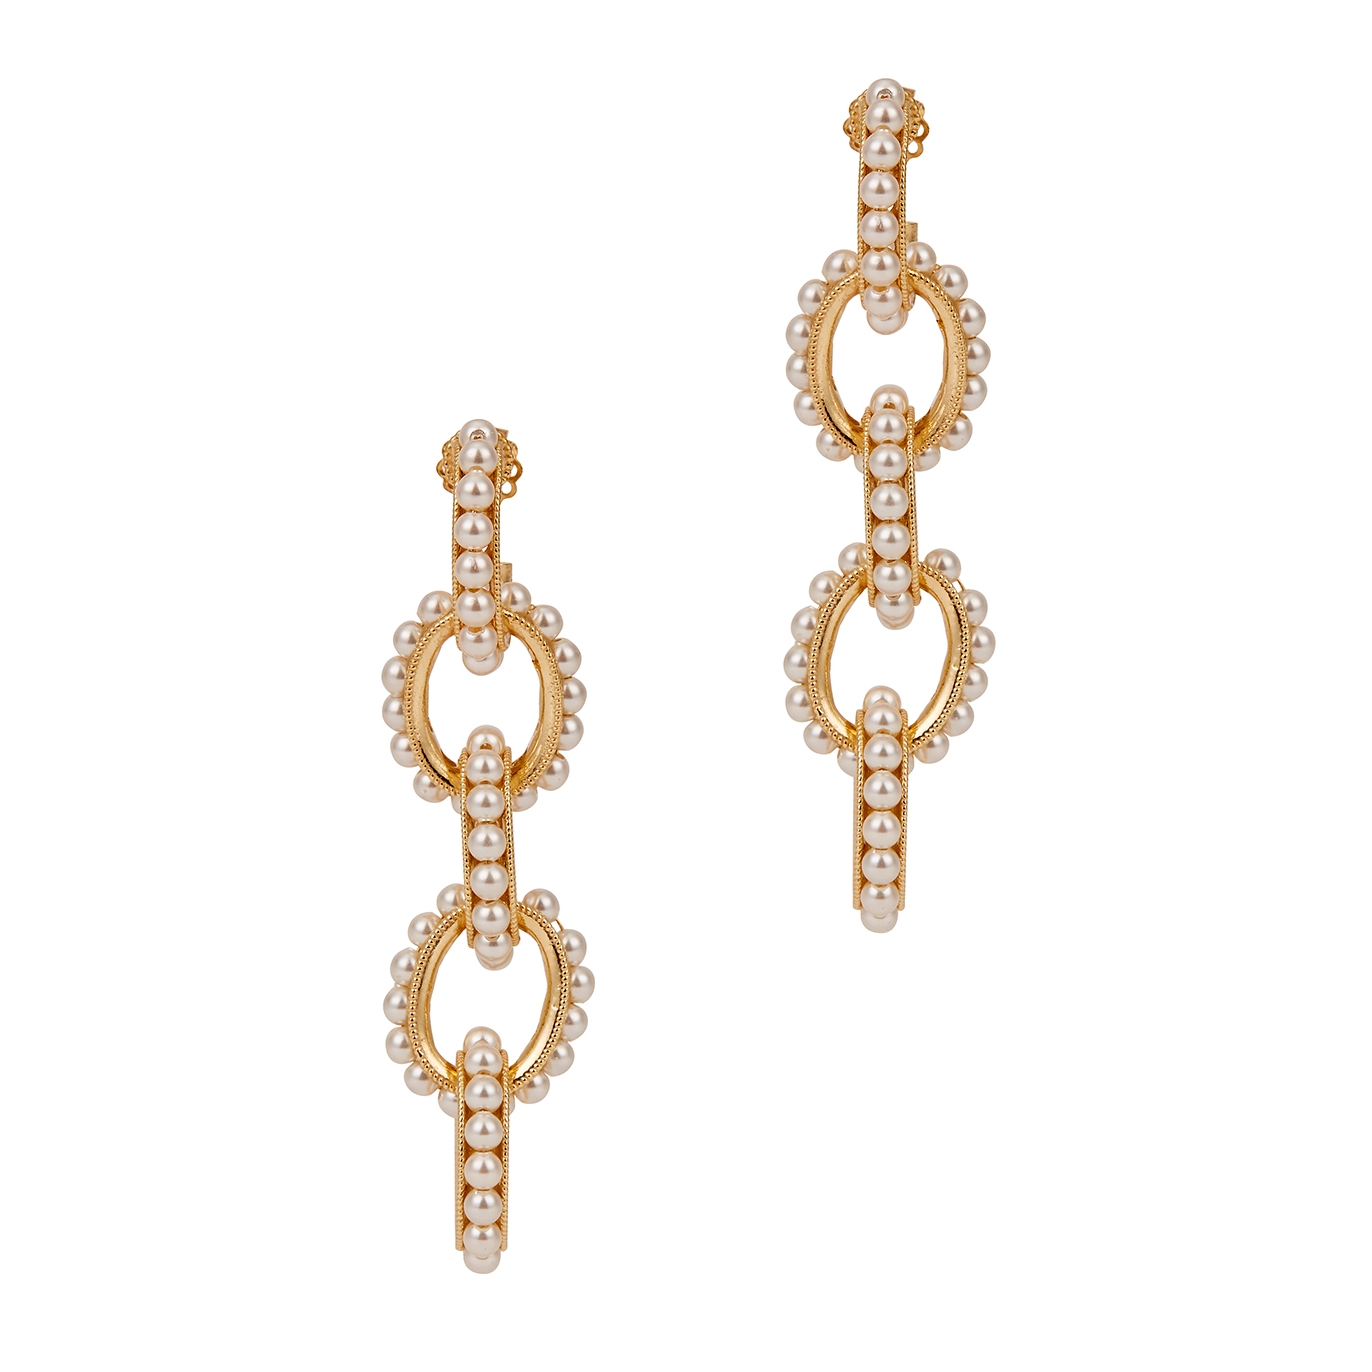 Soru Jewellery Mondello Embellished 24kt Gold-plated Drop Earrings - Pearl - One Size